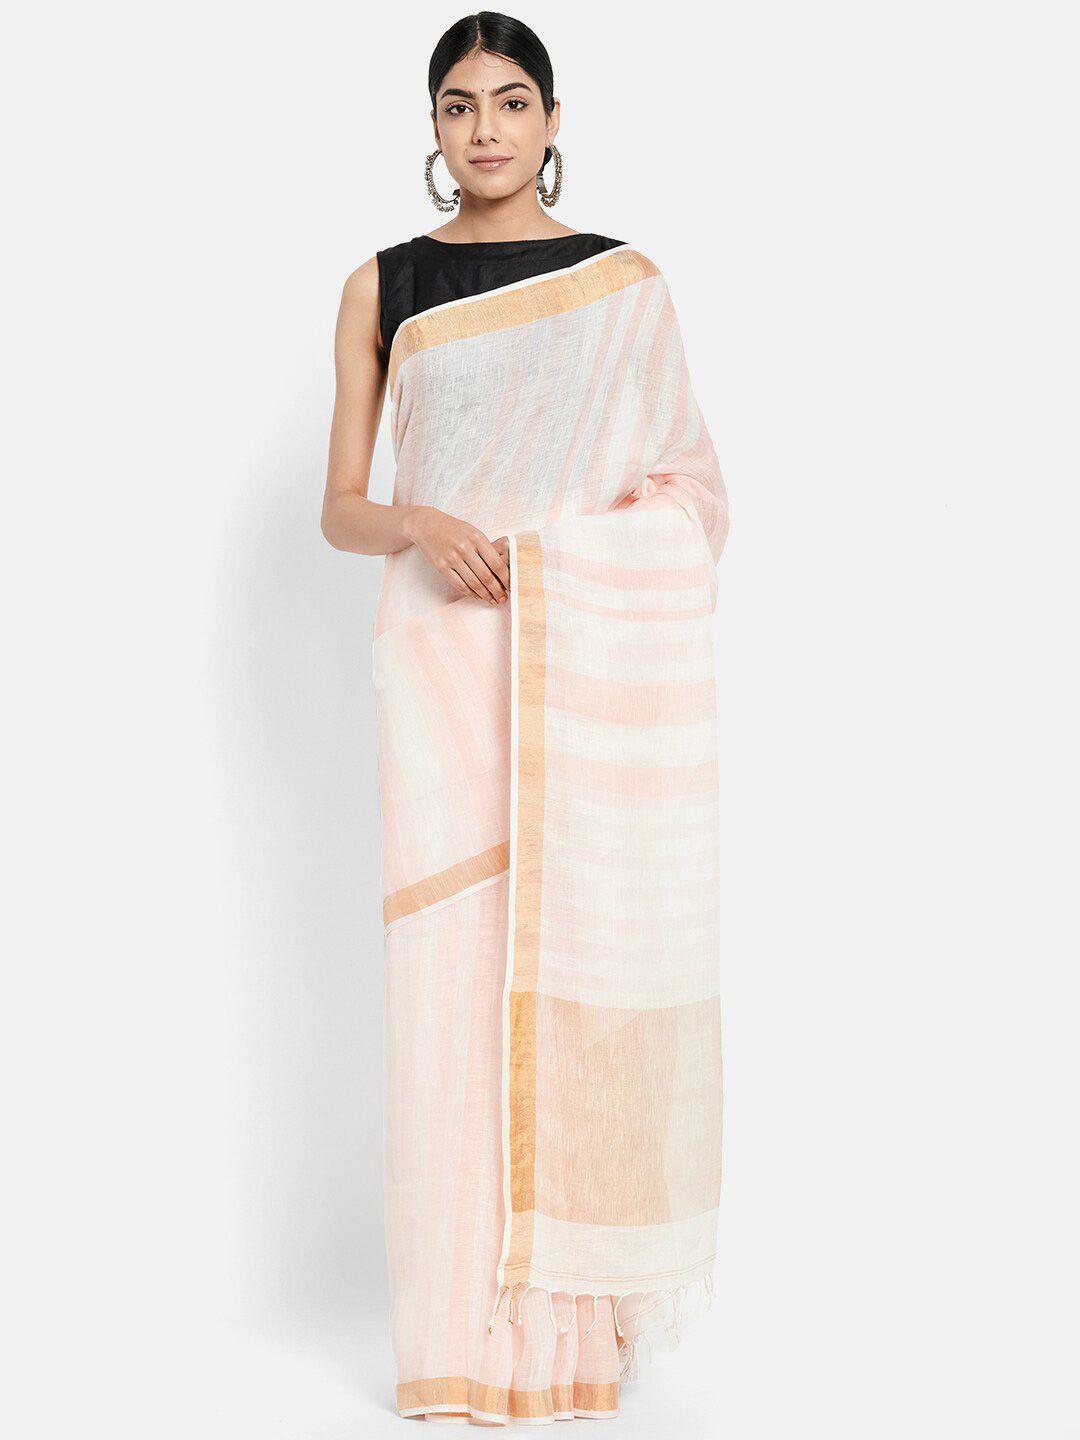 Fabindia Peach-Coloured & Off White Striped Zari Pure Linen Saree Price in India